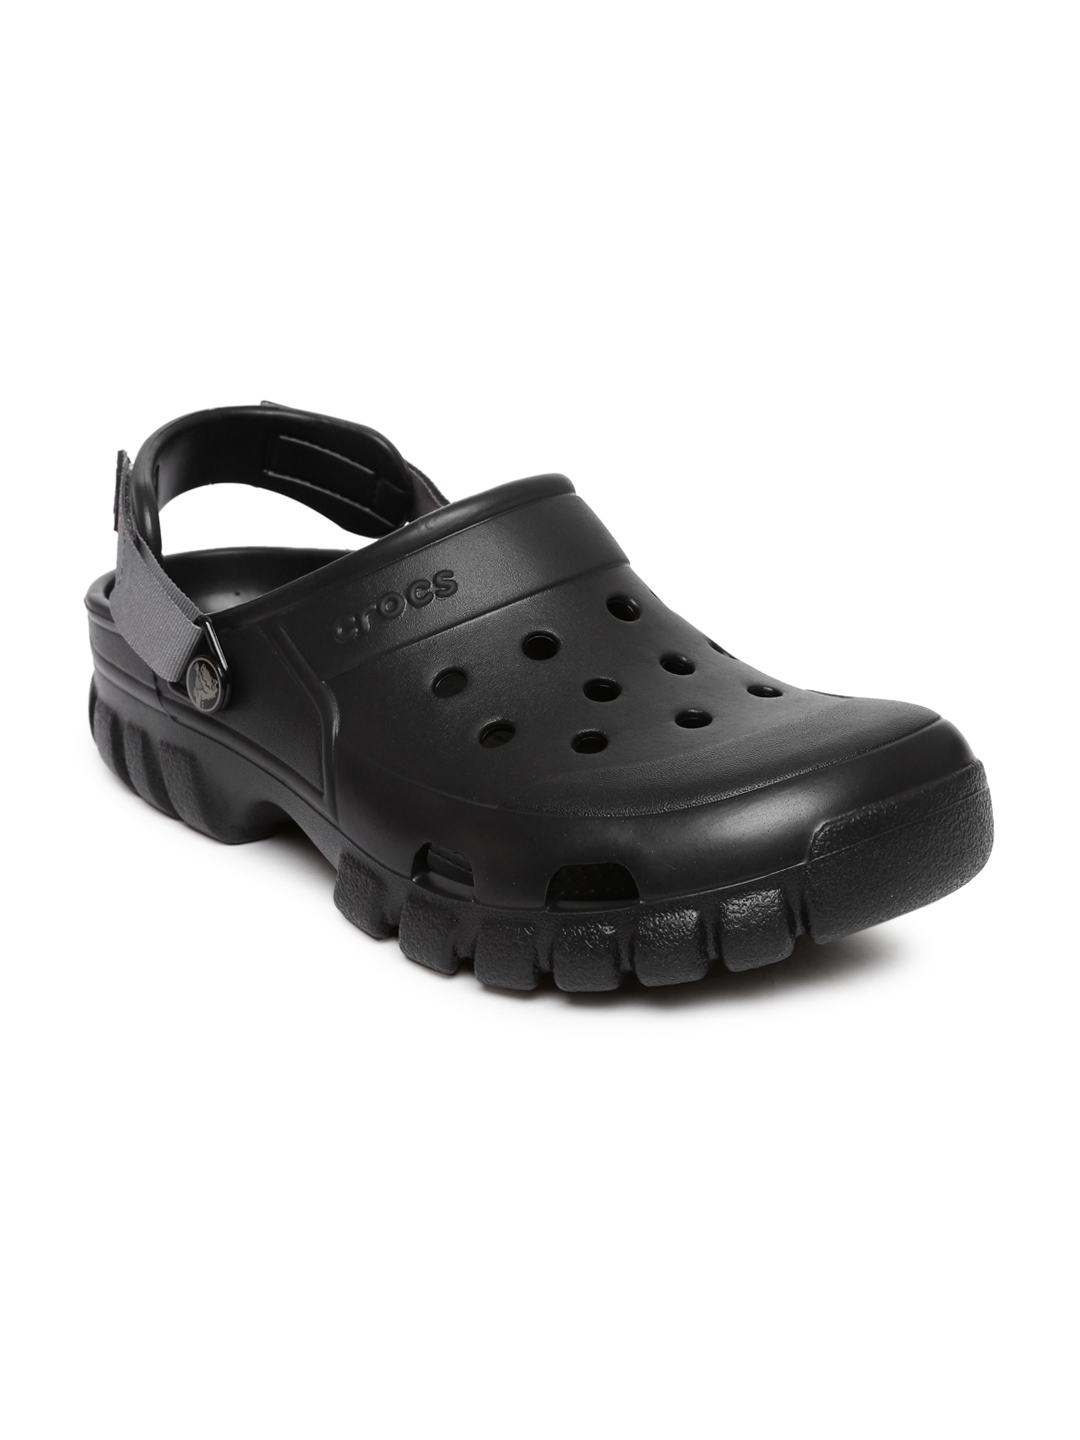 crocs offroad sport clog black